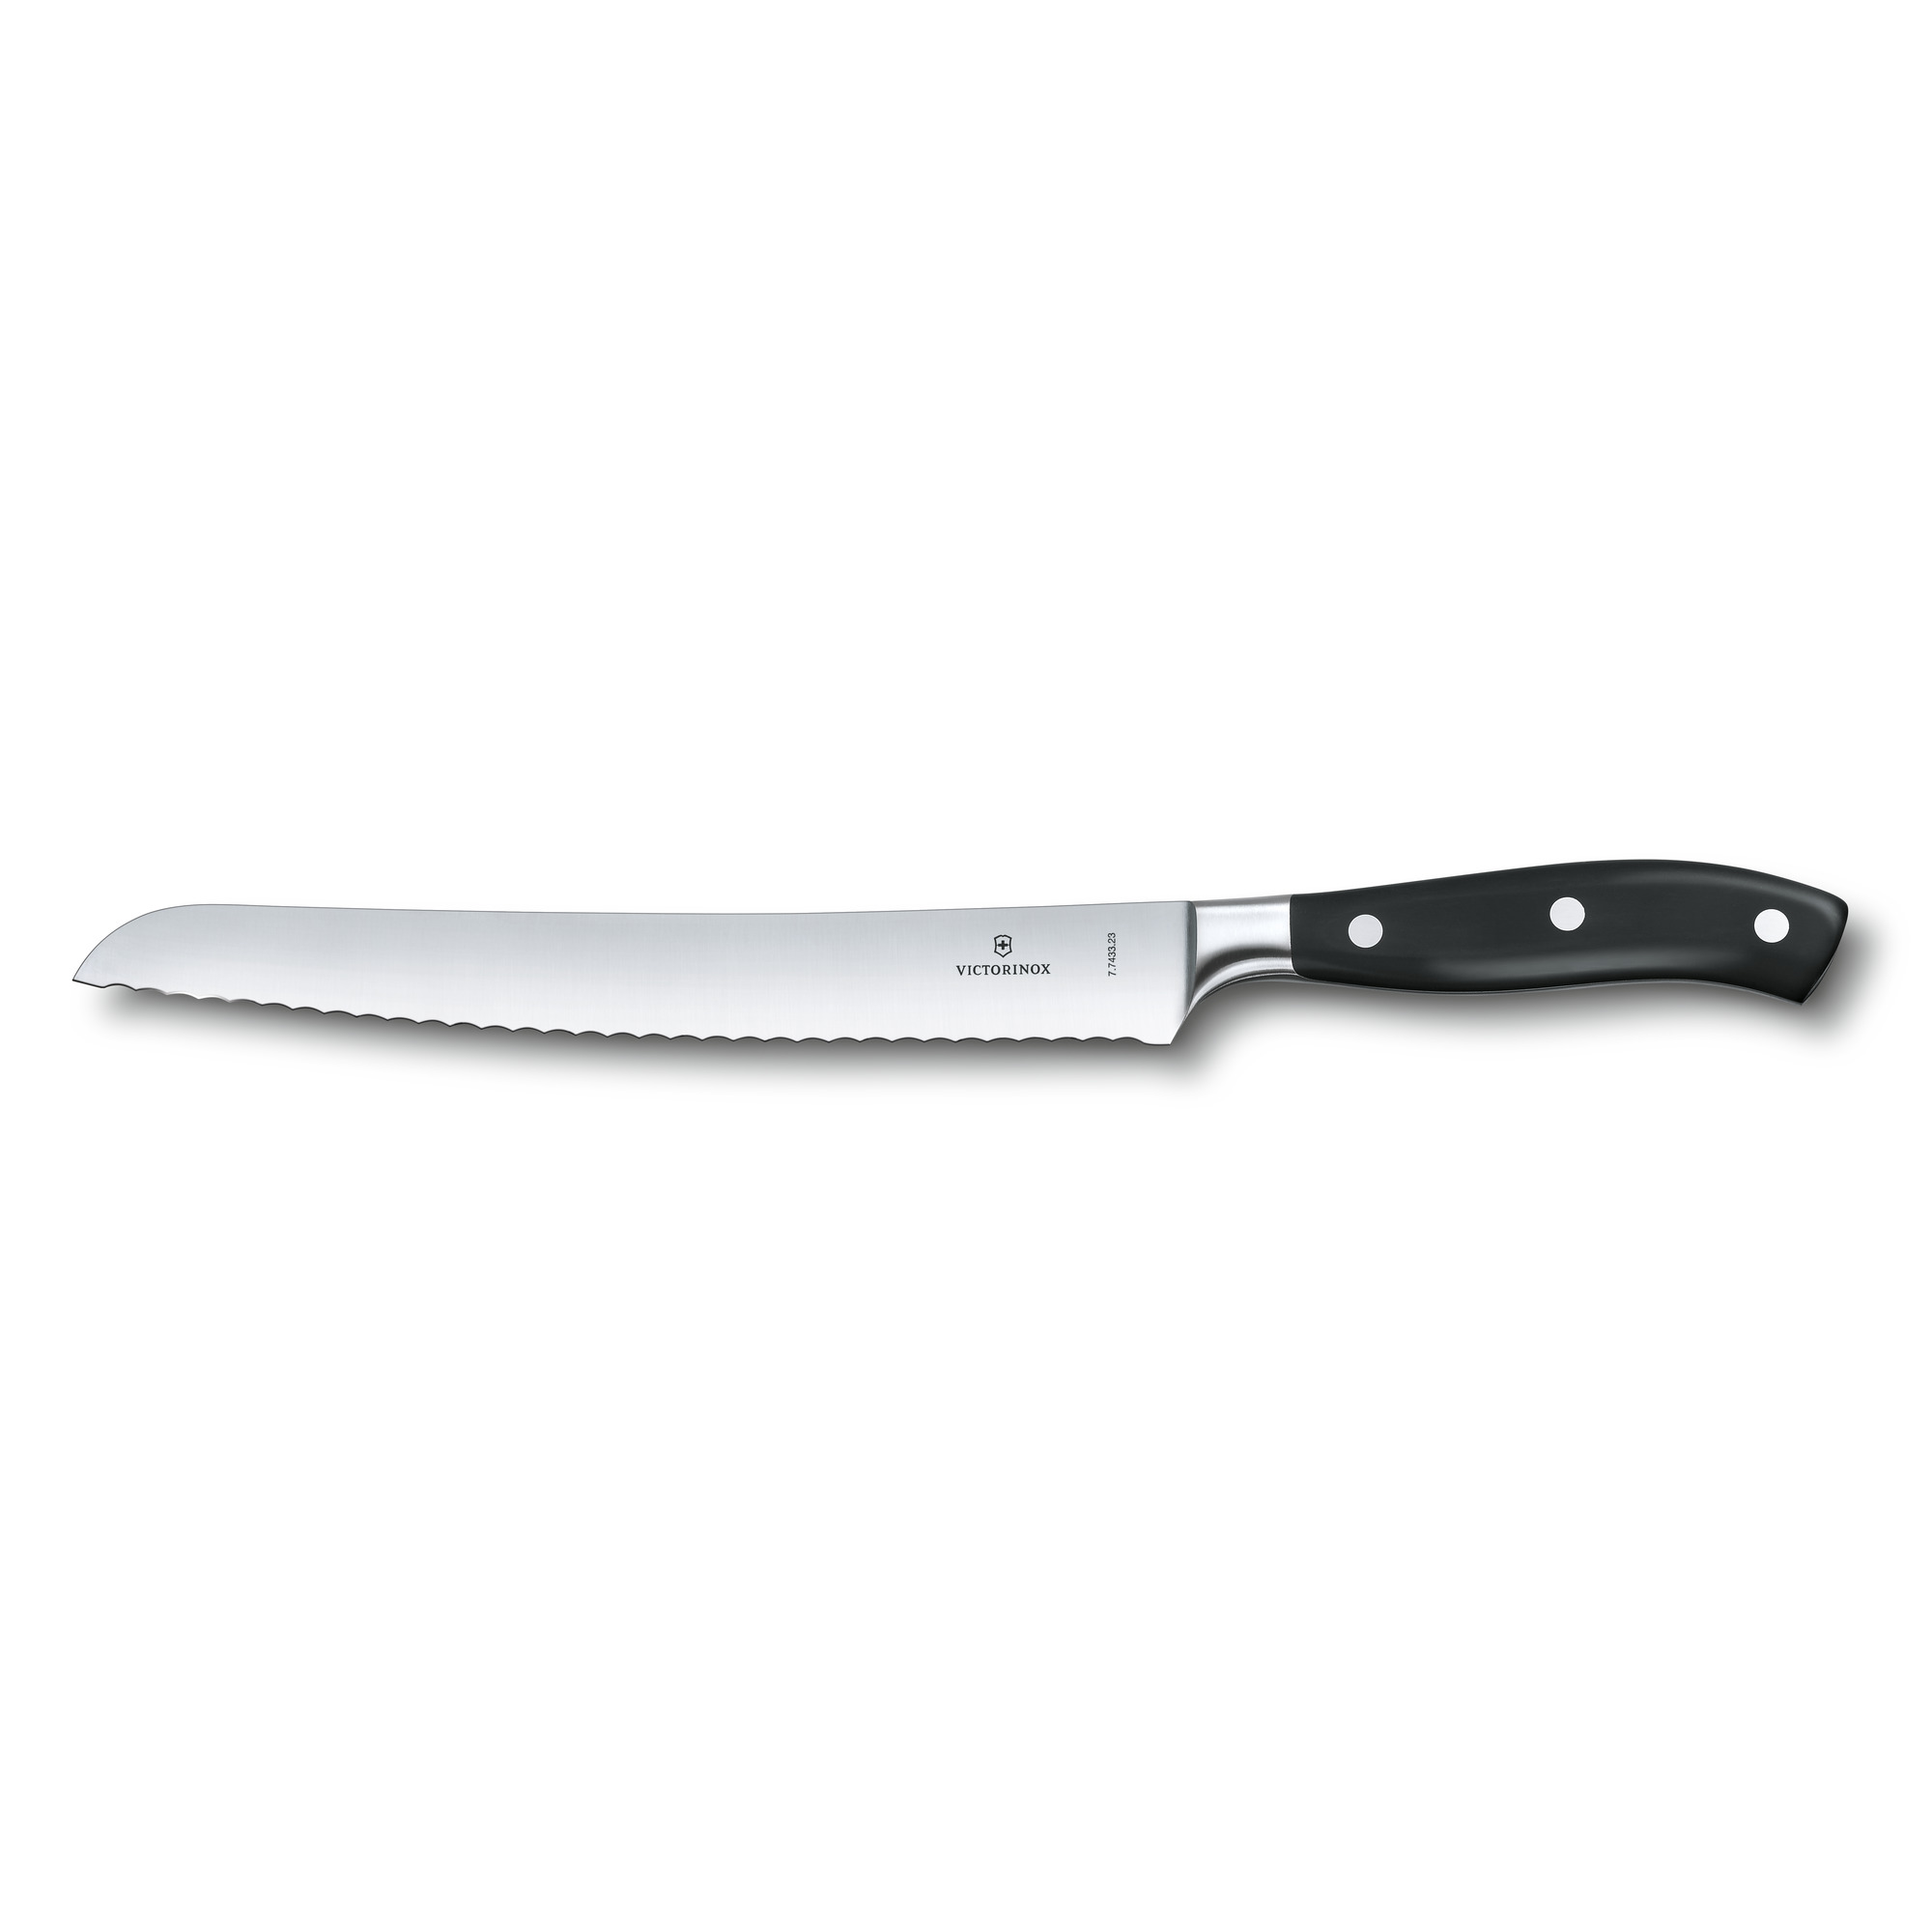 Couteau à pain Victorinox Grand Maître lame dentée 23 cm - manche noir